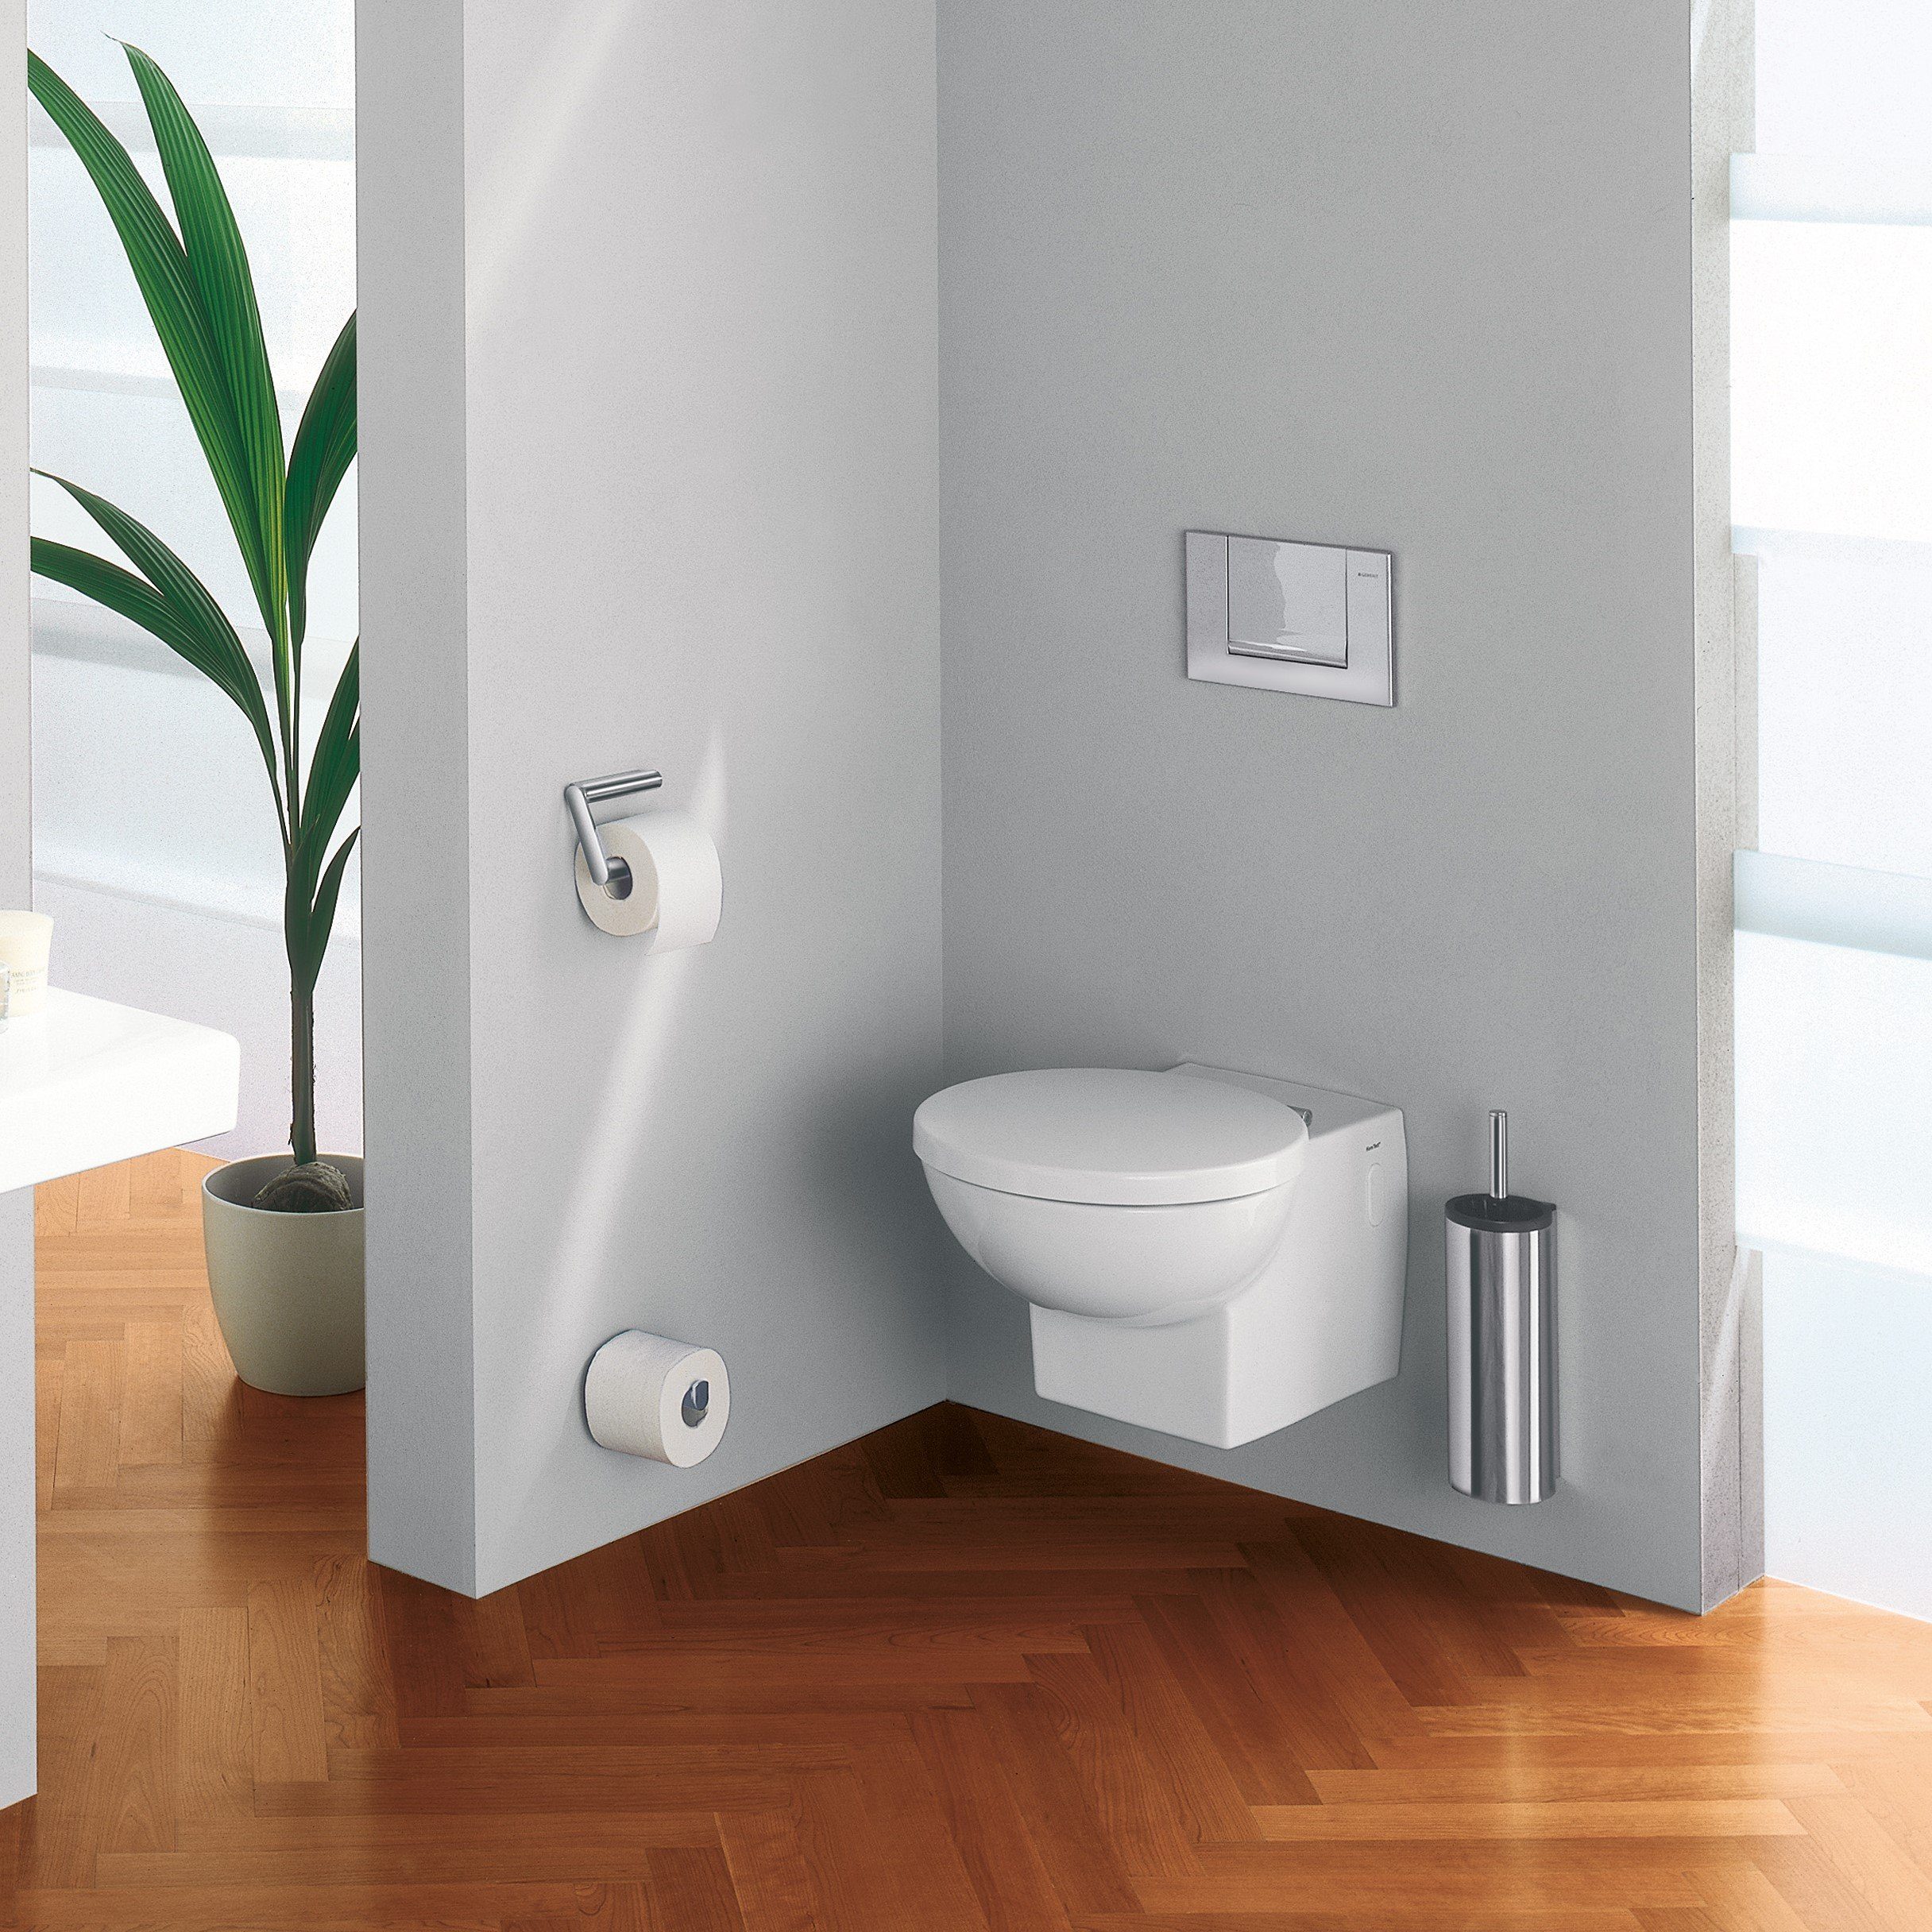 Halterung aus WC-Bürste mit Toilettenbürstengarnitur (Vormontiert), Plan, Metall, Keuco WC-Reinigungsbürste und